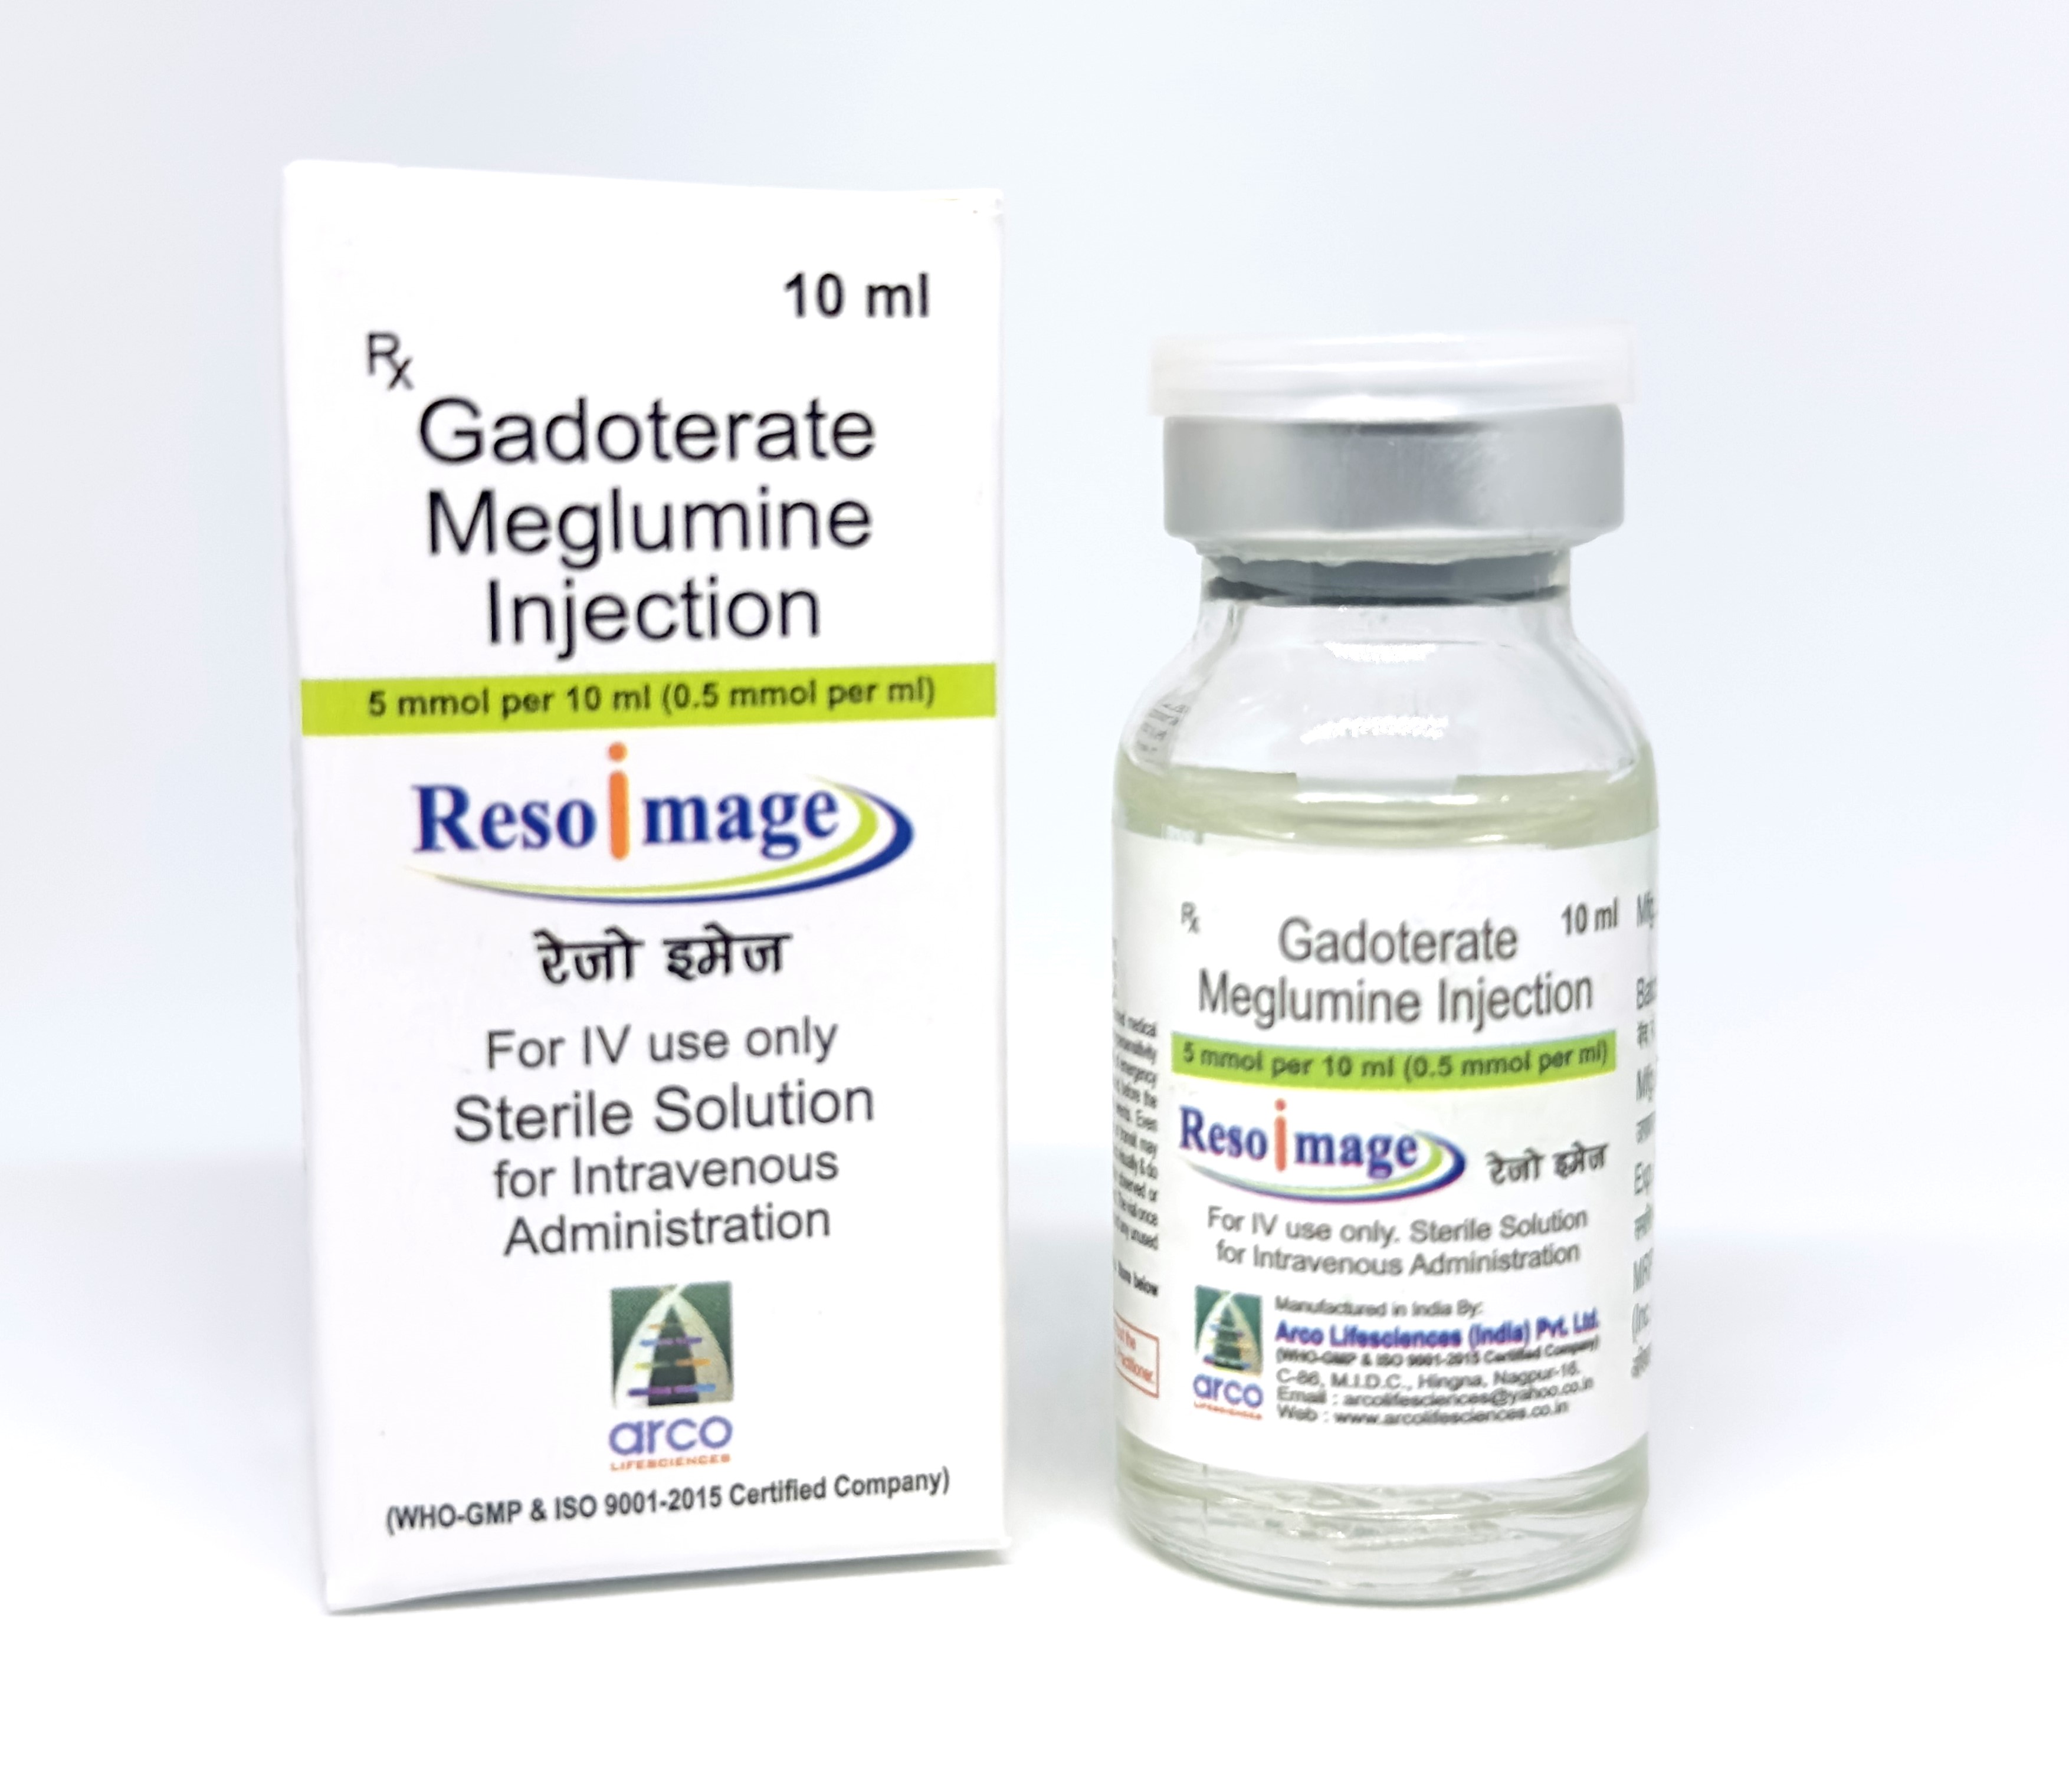 RESOIMAGE (Gadoterate Meglumine  Injection 376.92 mg/ml (0.5 mmol/ml)